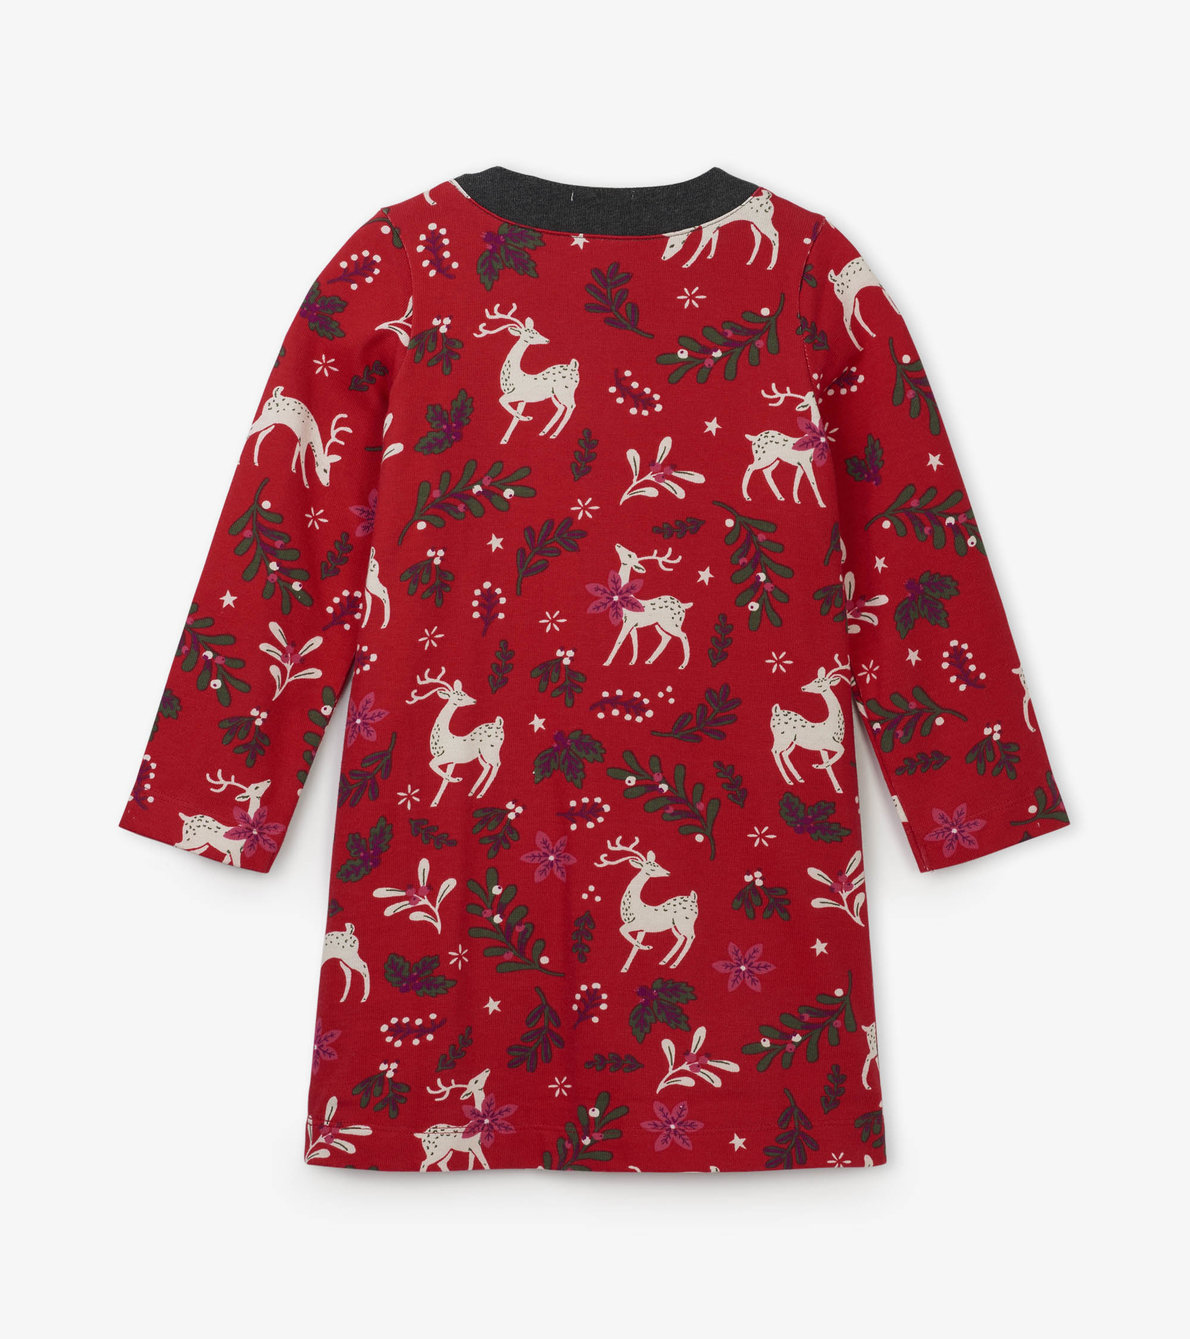 View larger image of Mistletoe Deer Mod Dress